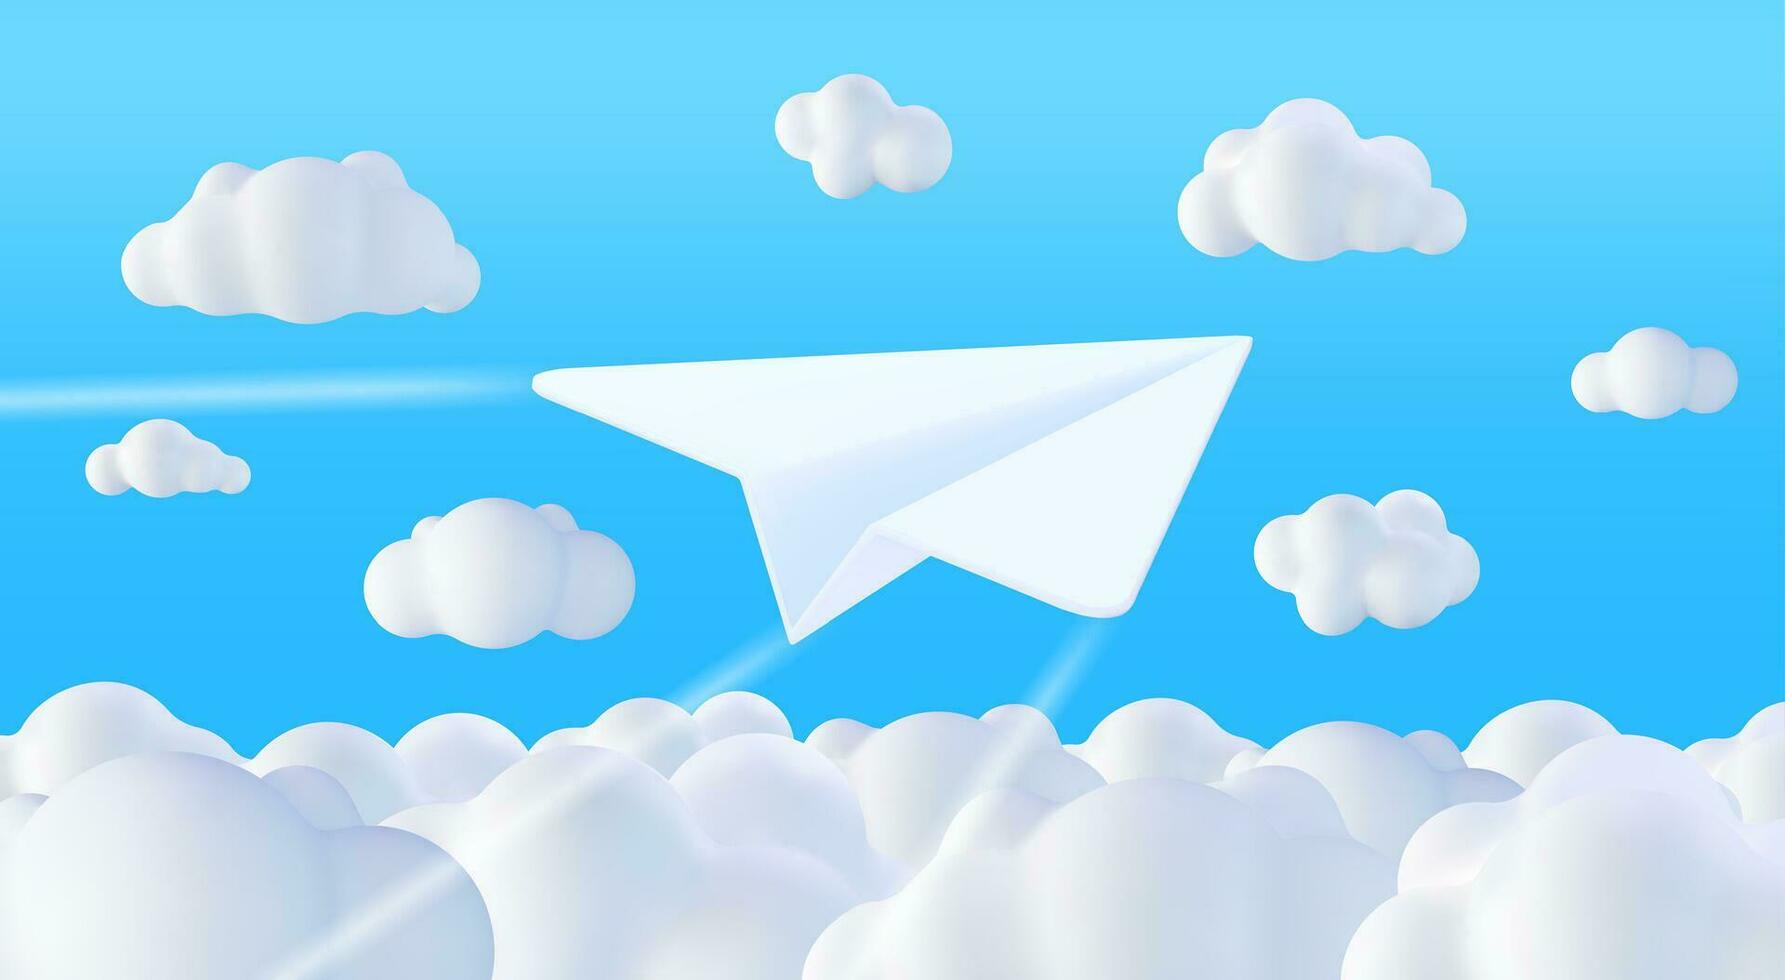 3d Weiß Papier Flugzeug im Himmel mit Wolken. machen gefaltet Papier in gestalten von Flugzeug Symbol. Origami gefaltet Spielzeug Luft Ebene. Transport Lieferung, Internet Mail und Nachrichtenübermittlung Symbol. Vektor Illustration